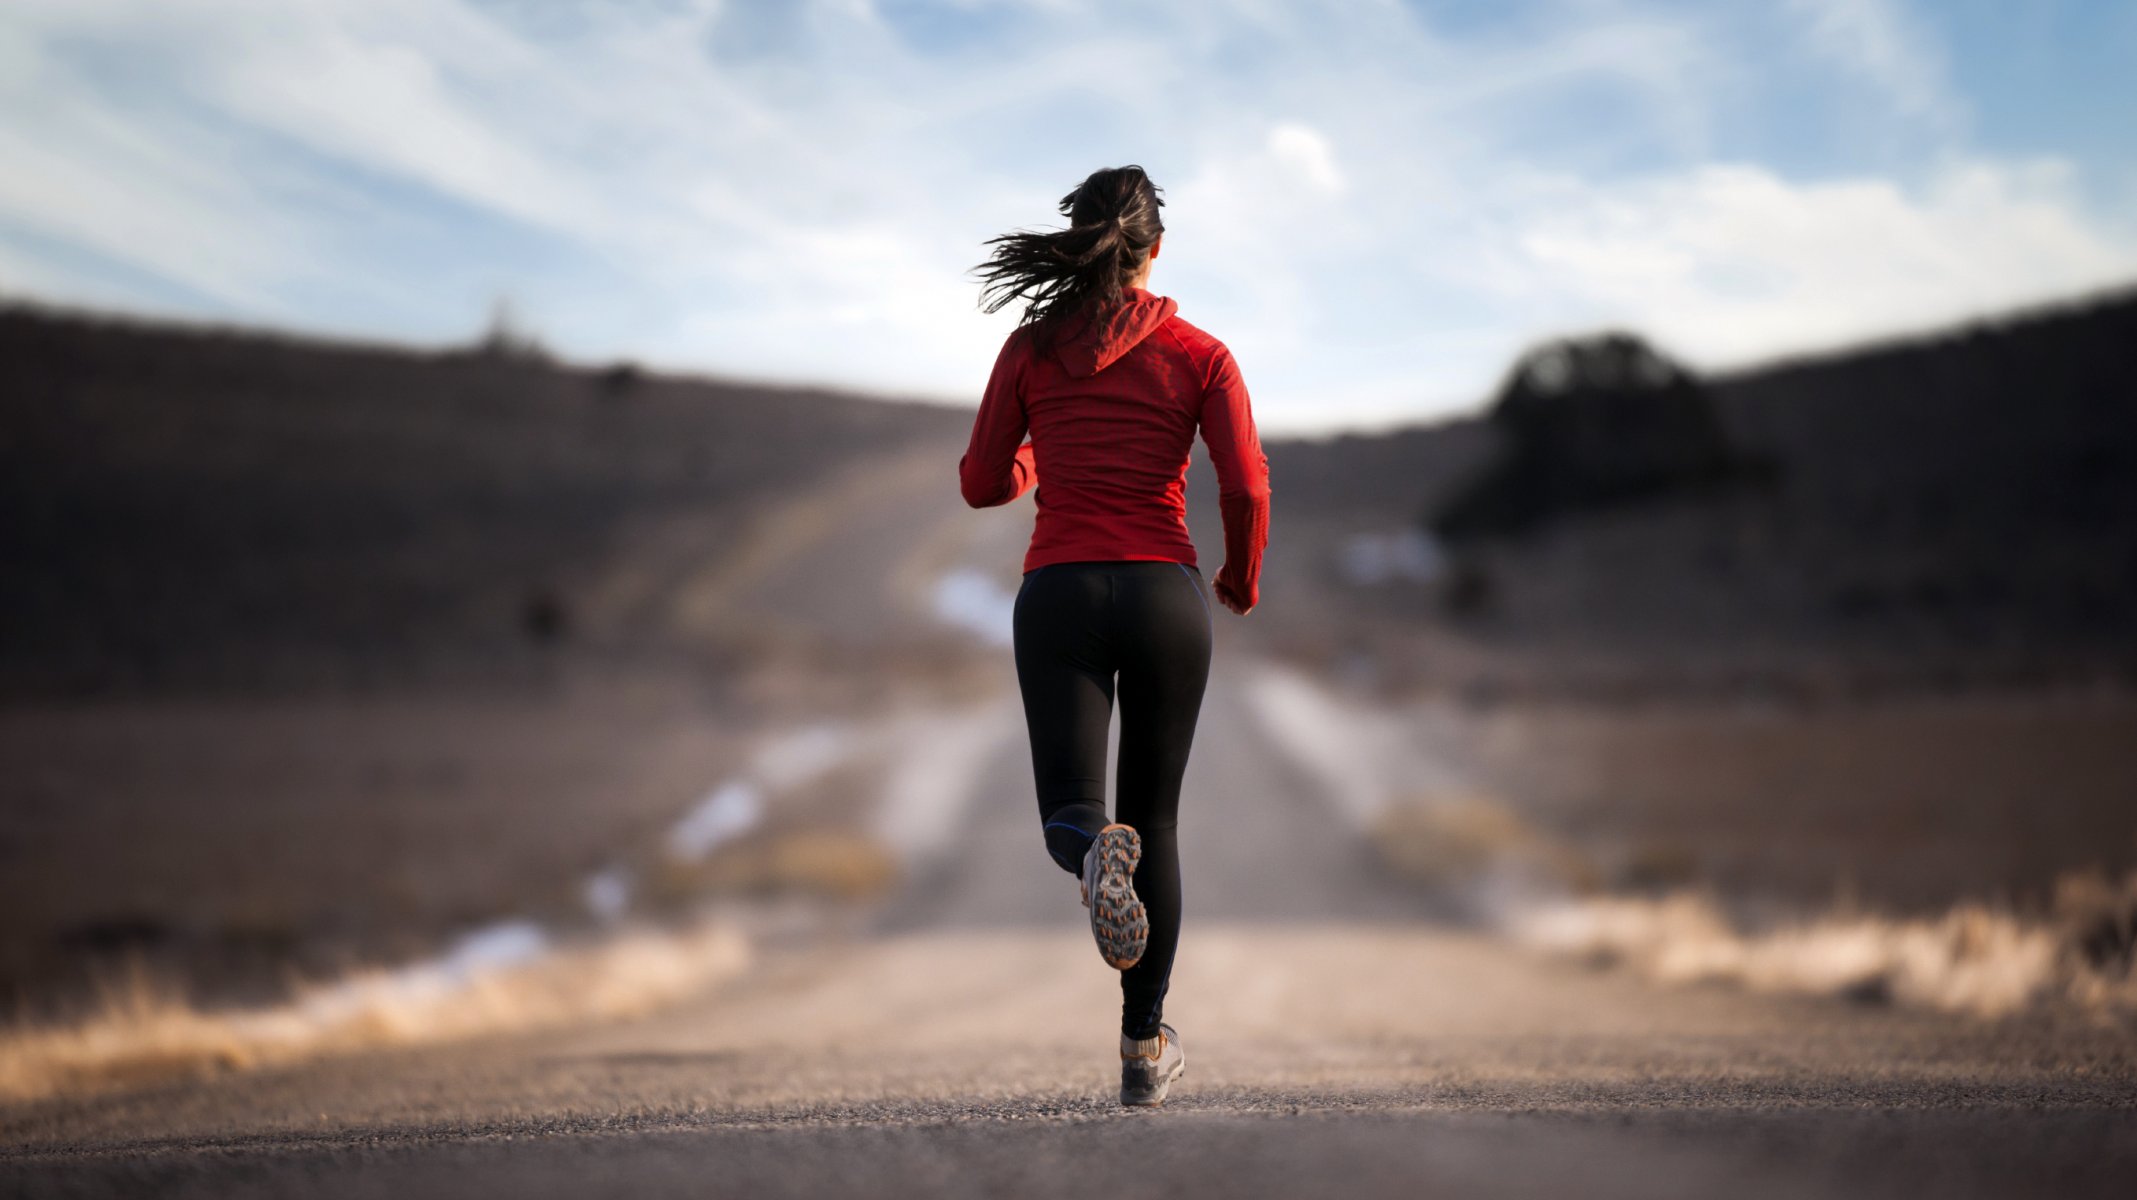 активность бег девушка дорога спорт тренировка